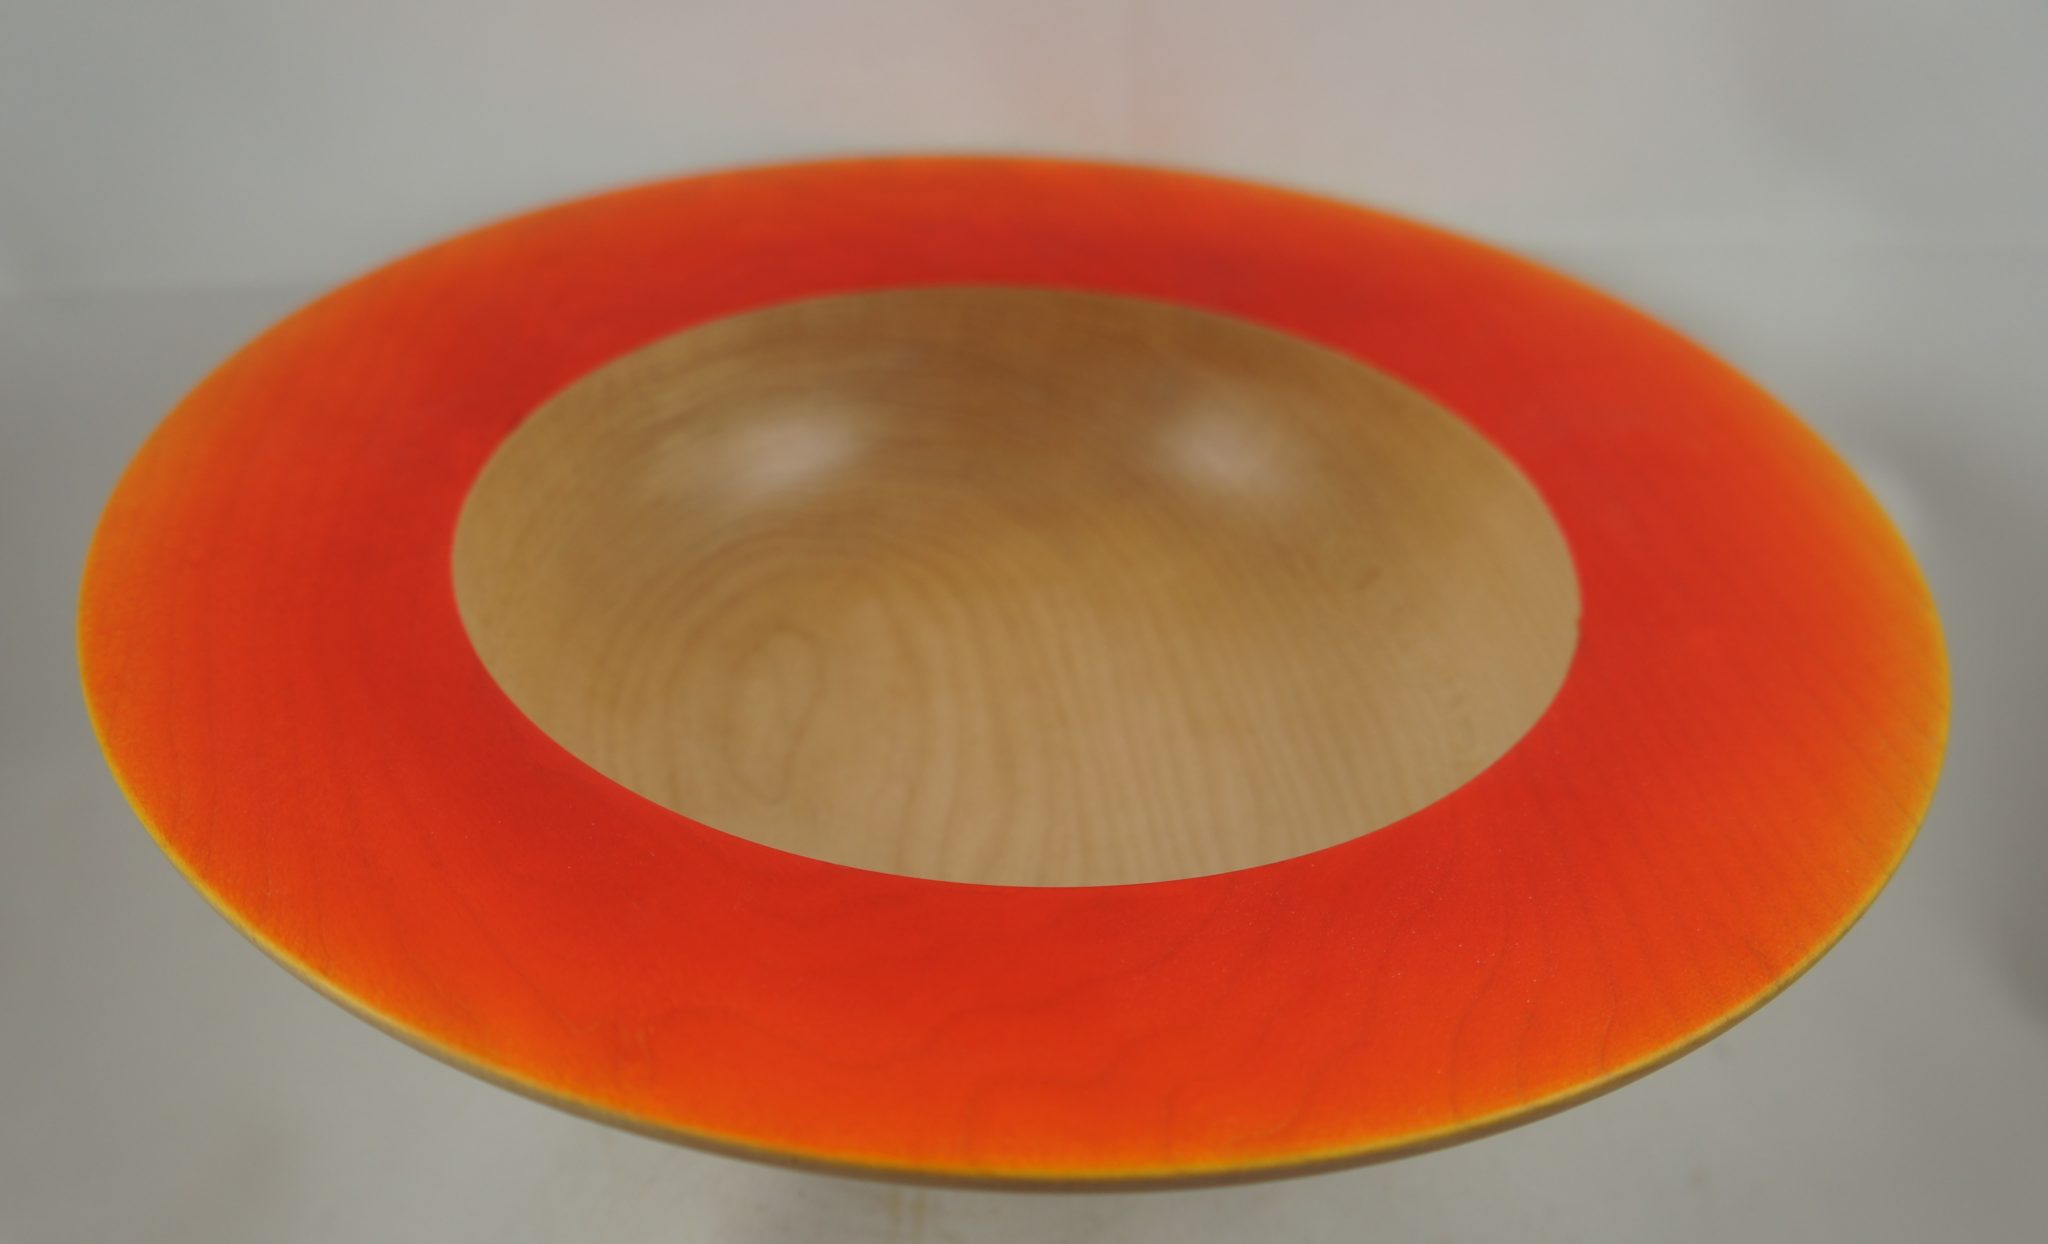 Maple bowl with orange air brushing